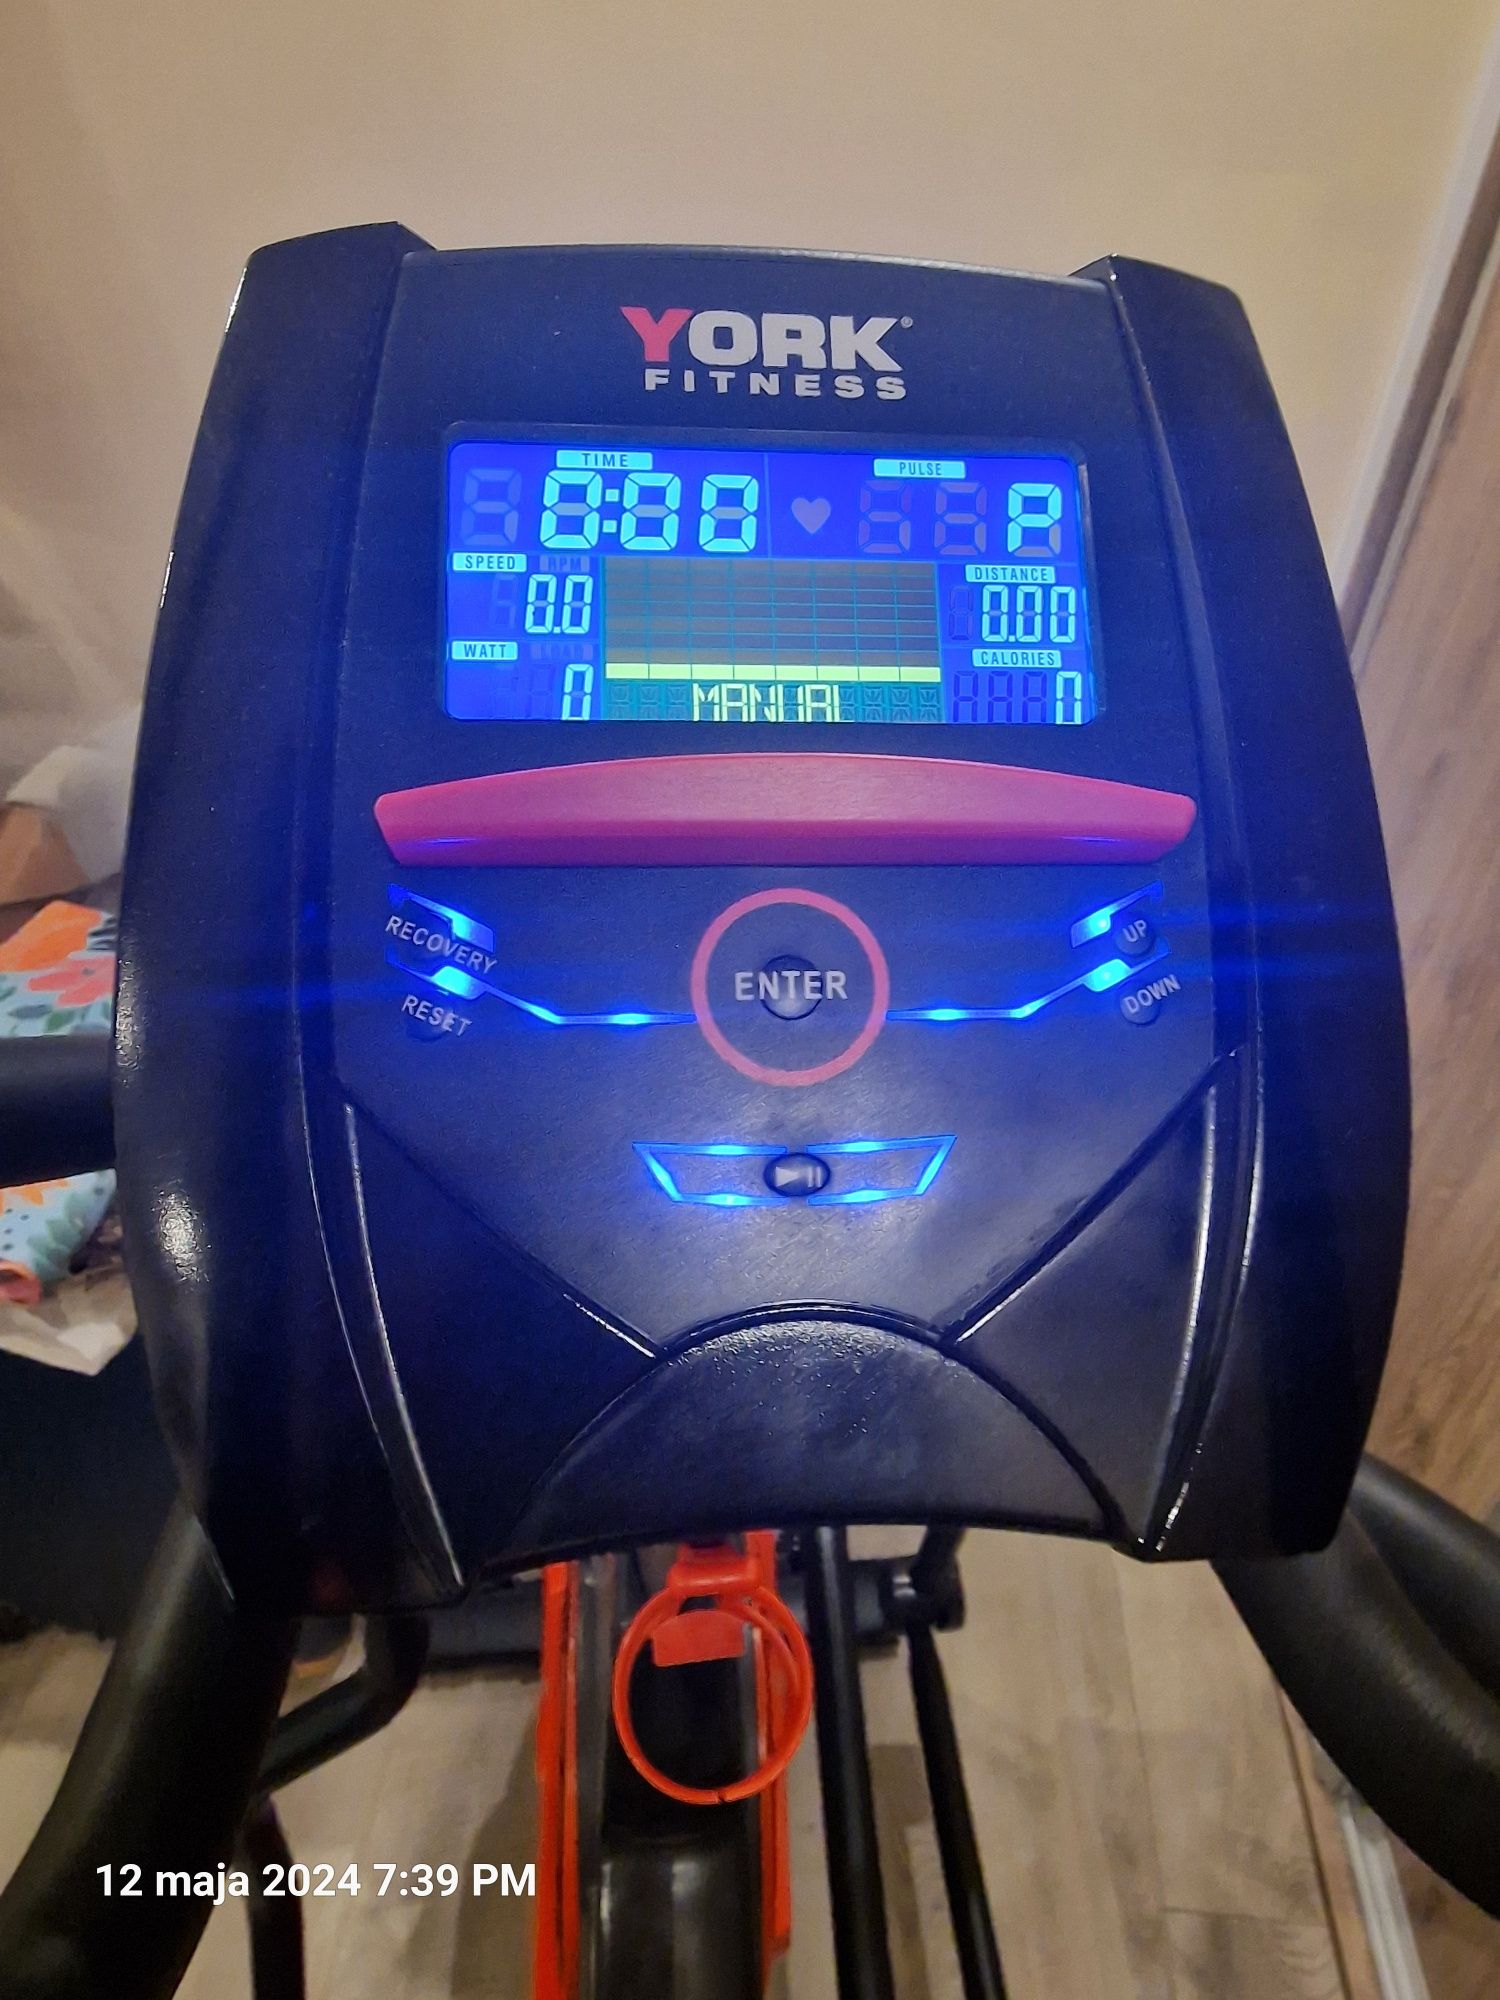 Orbitrek York x520 jak nowy